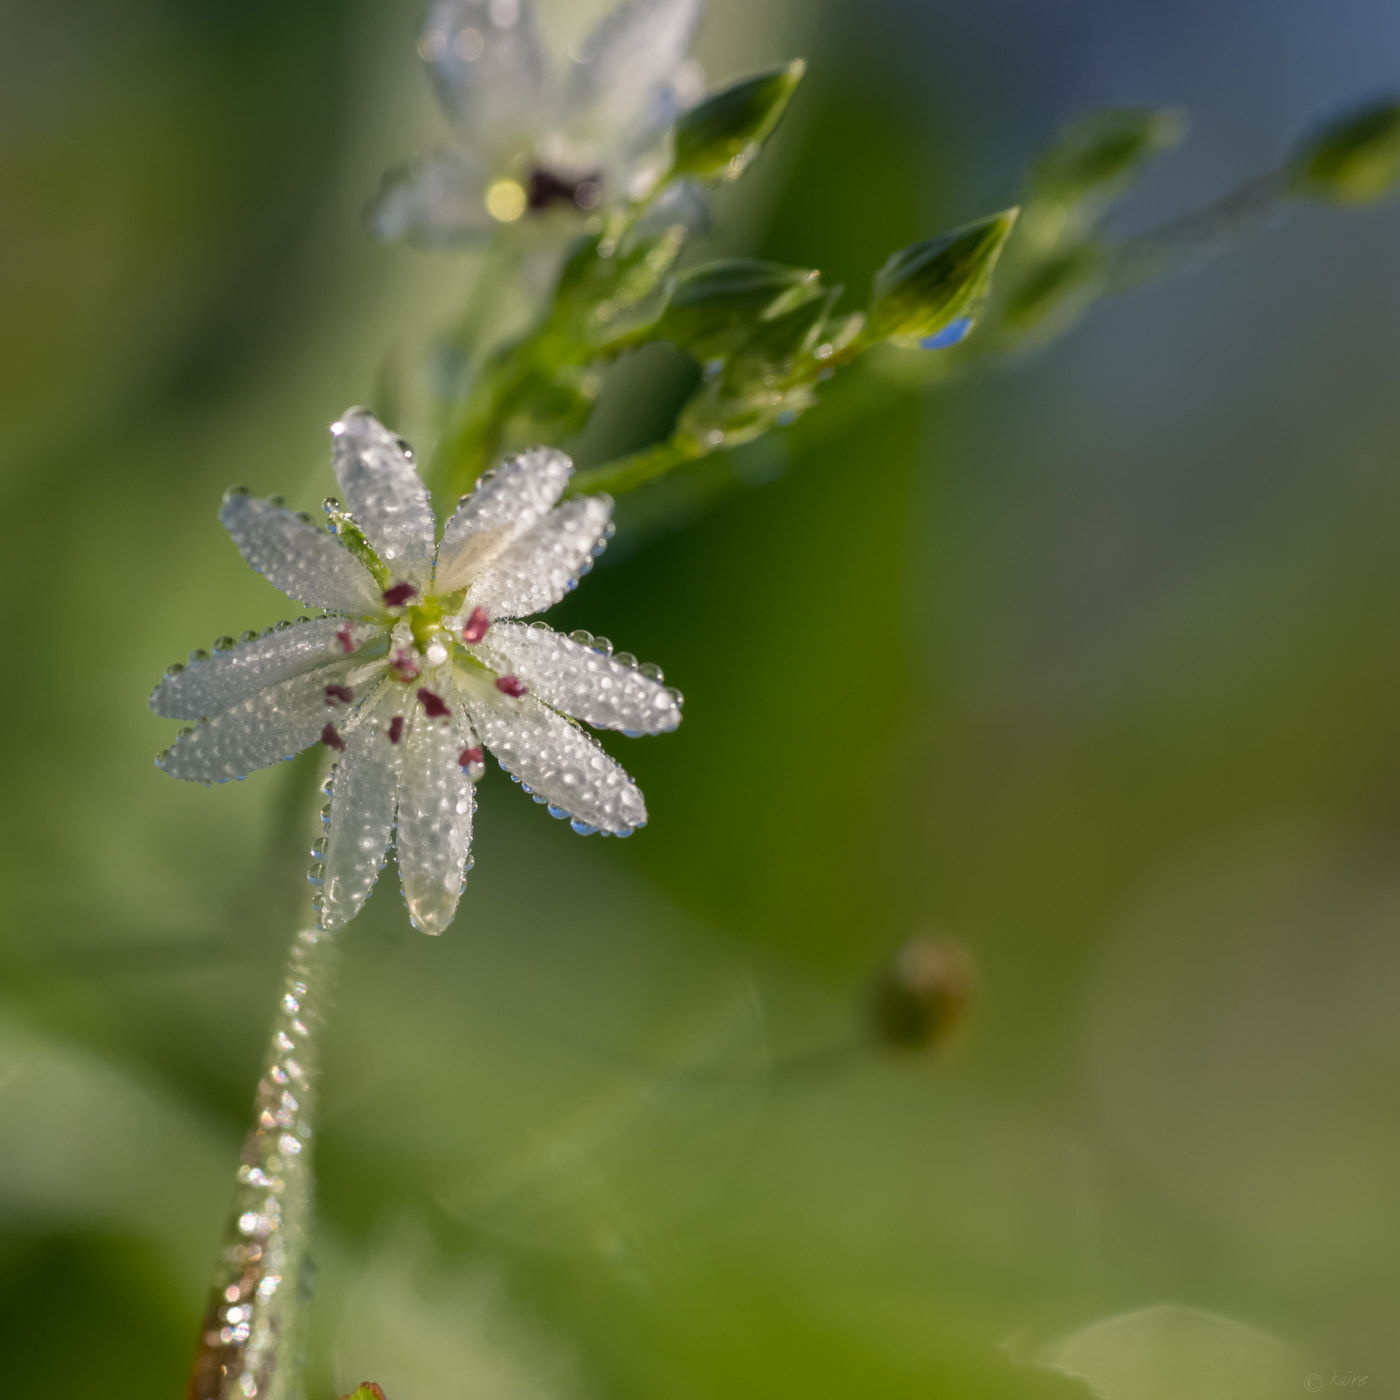 Sony SLT-A77 sample photo. Mist on flower photography